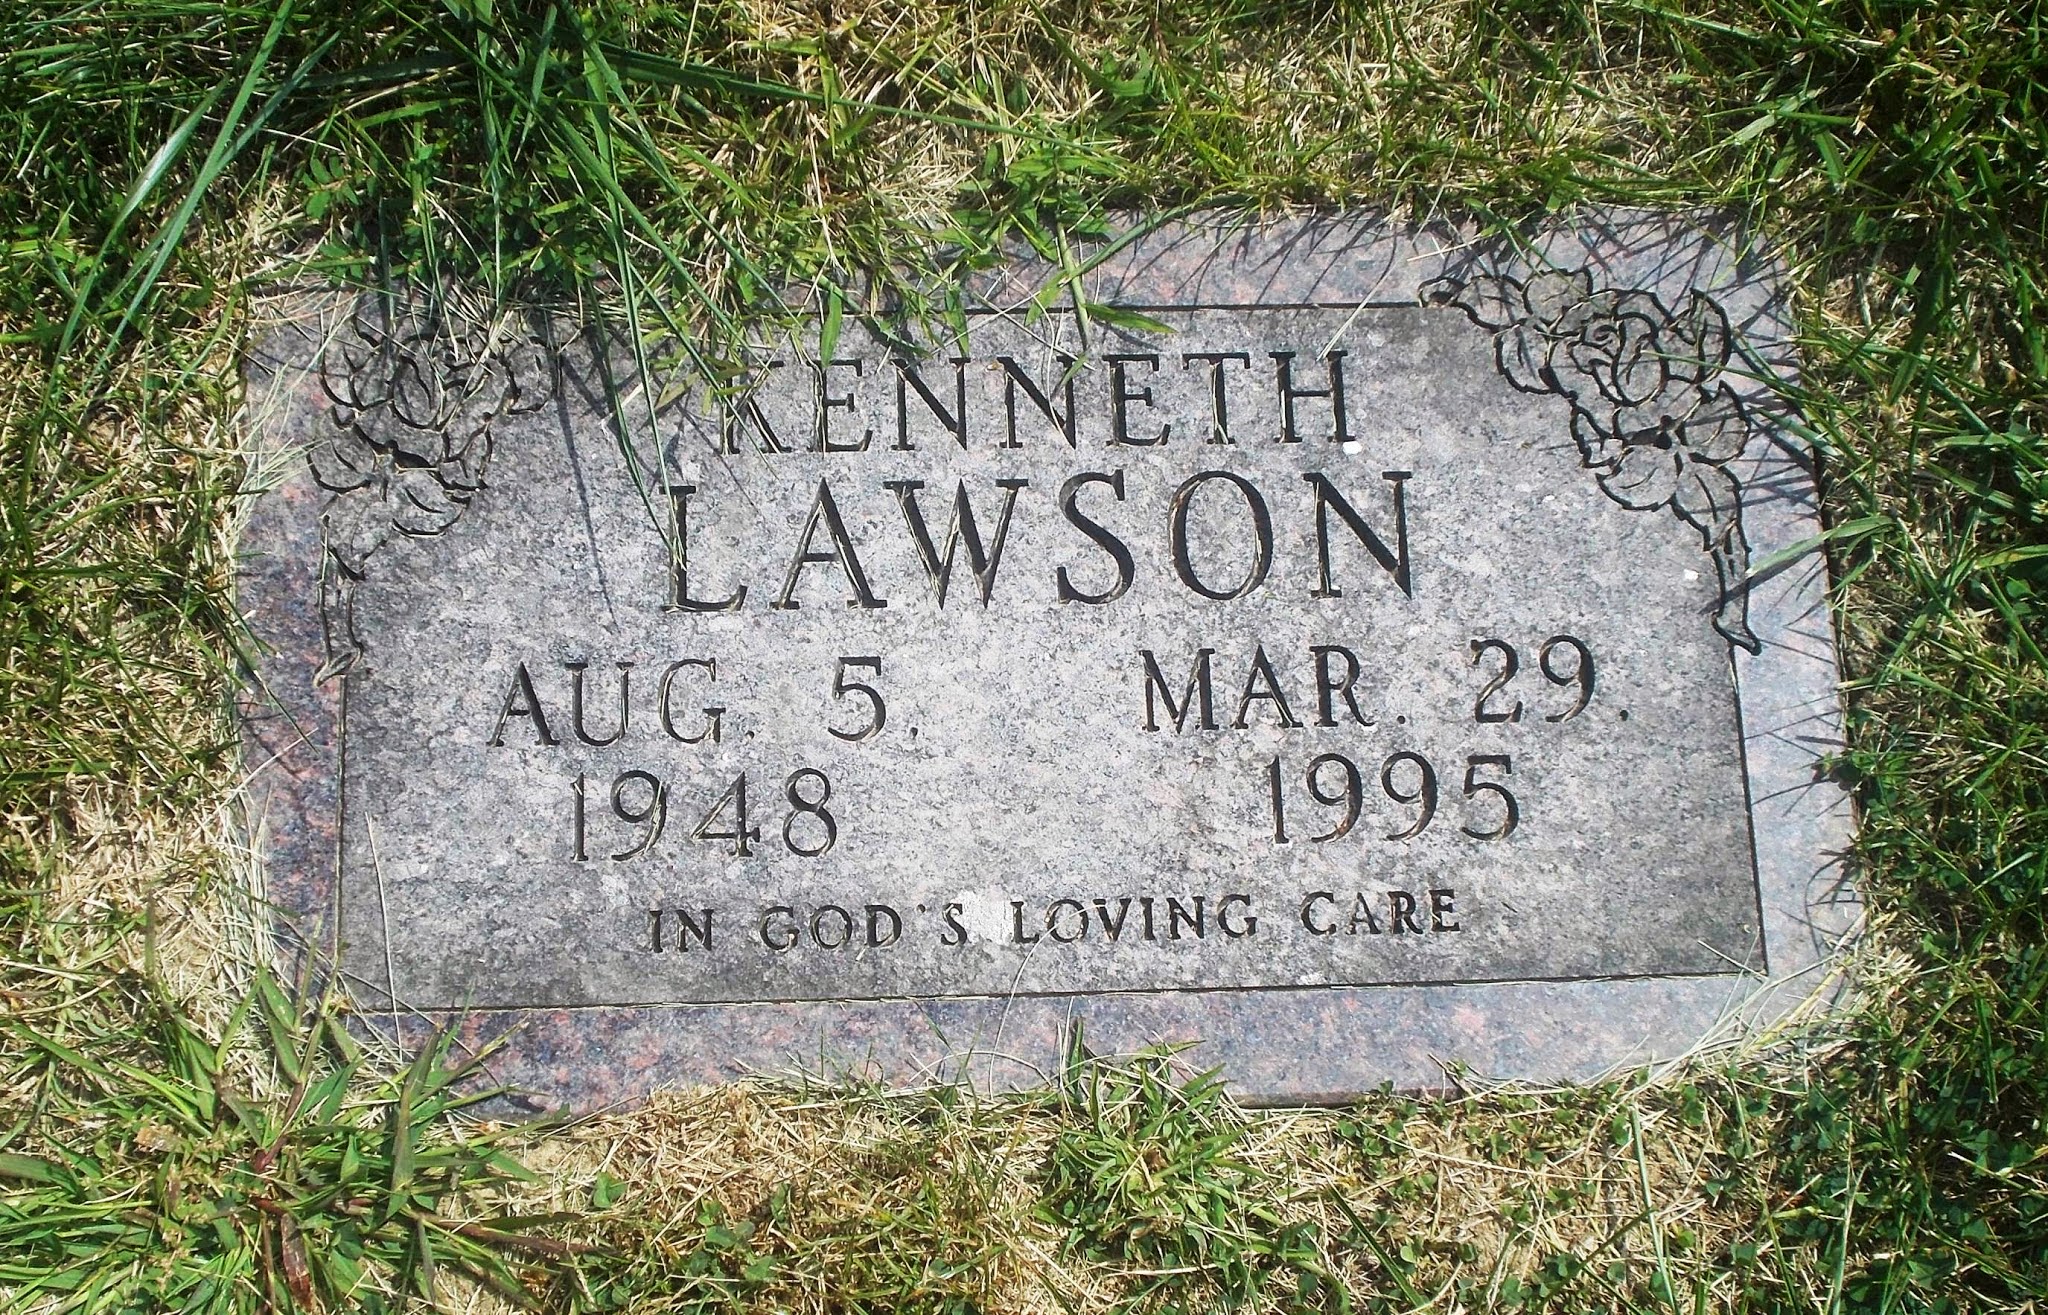 Kenneth Lawson